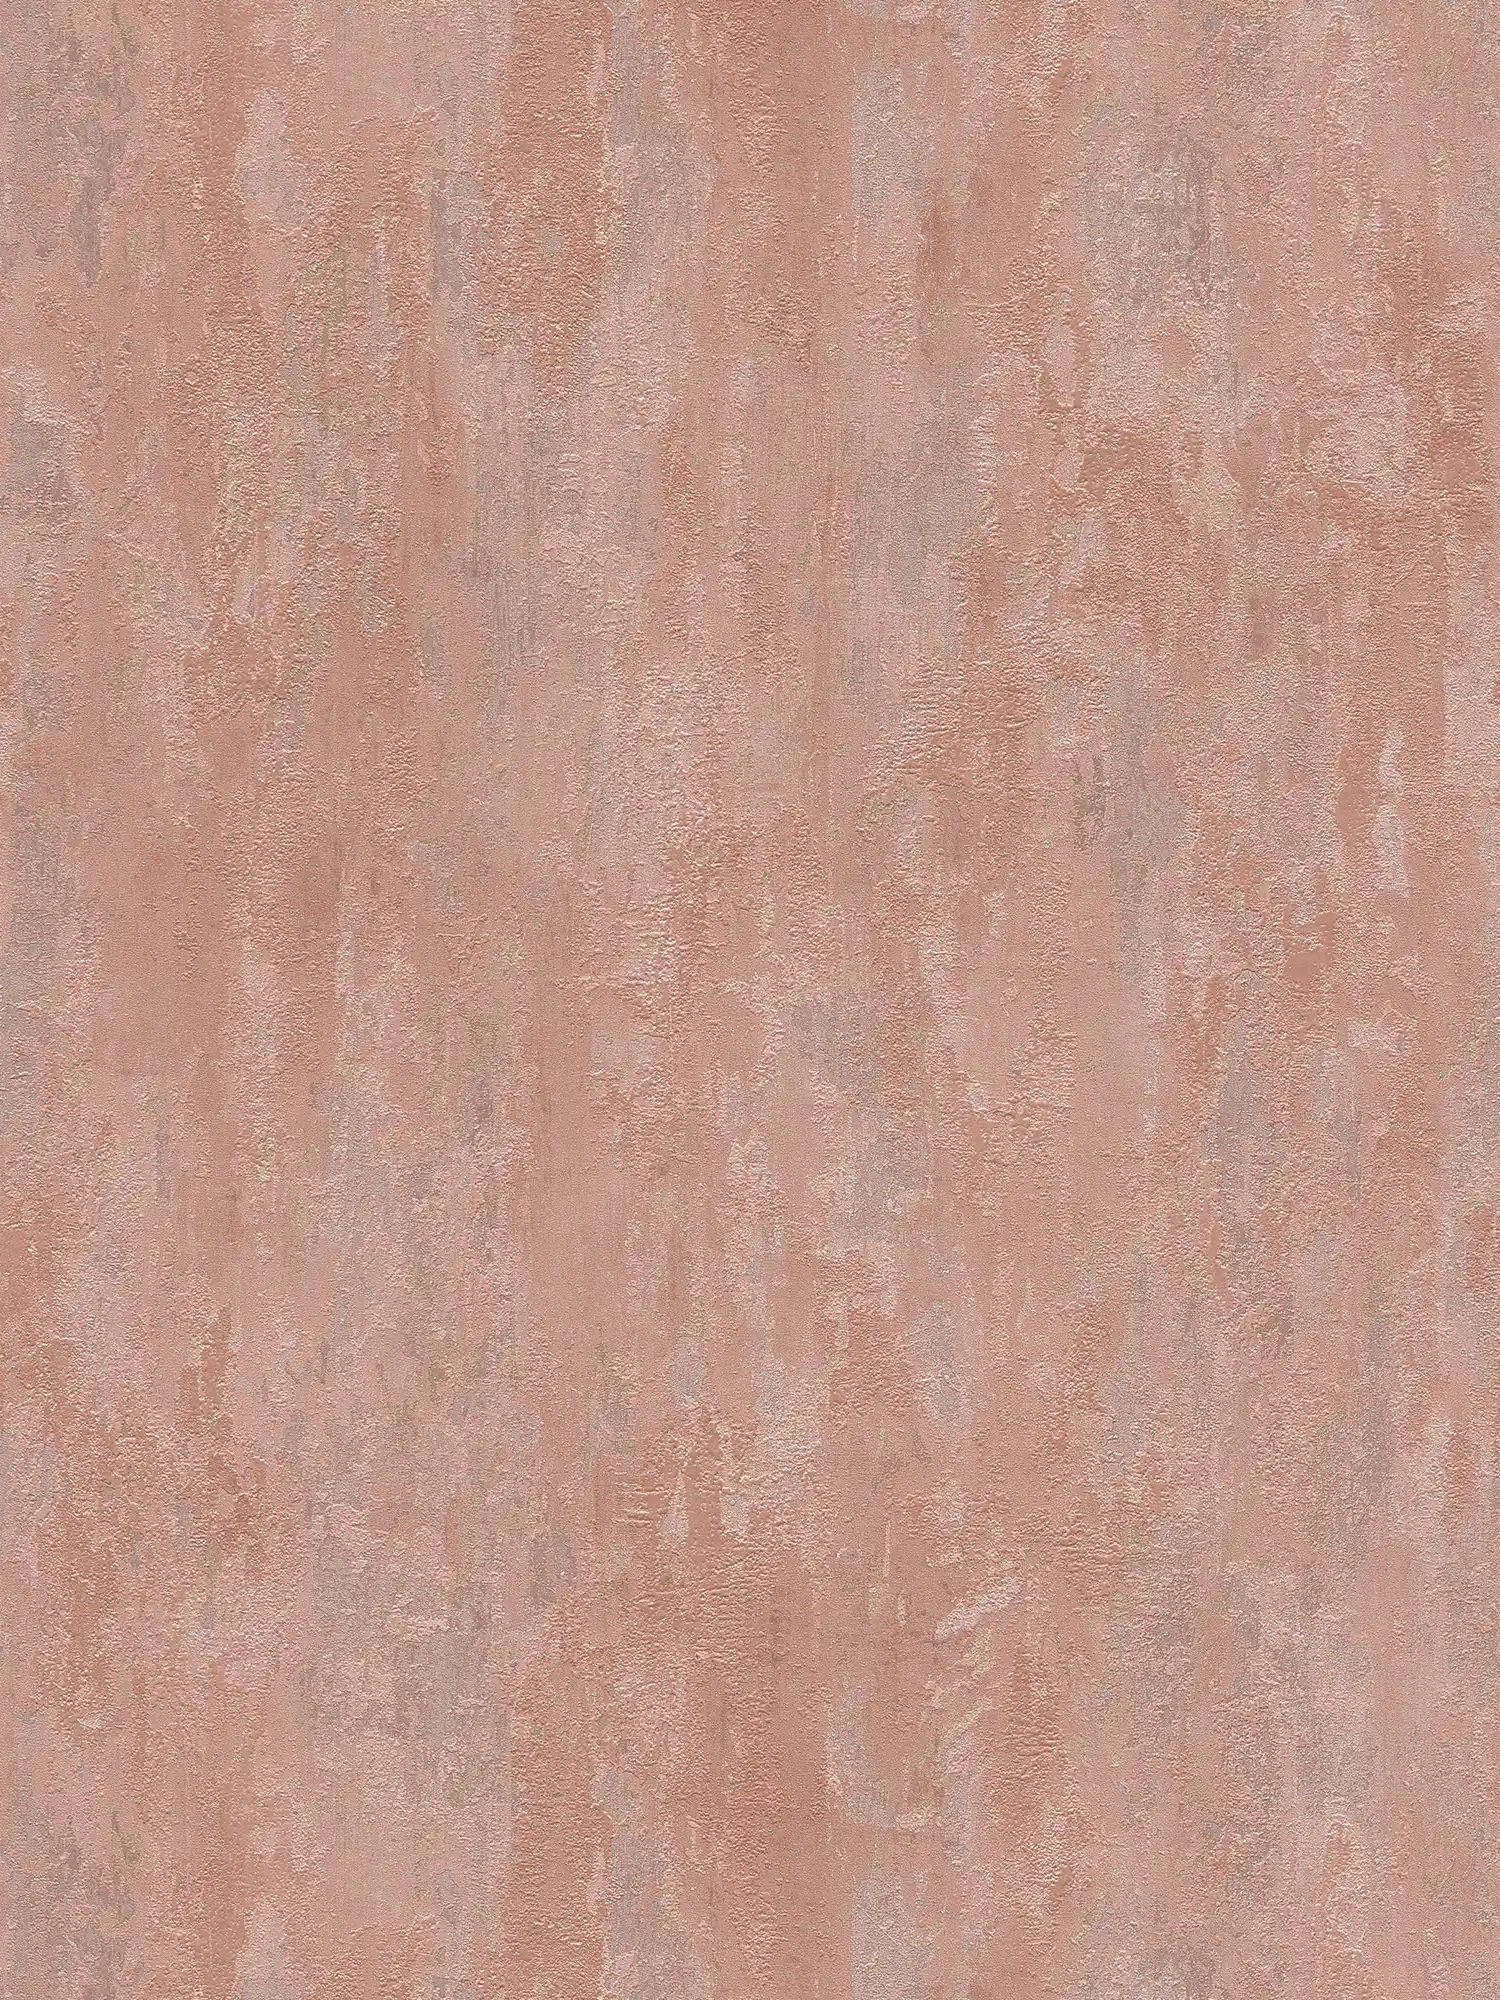         Papier peint style industriel avec effet structuré - métallique, rose
    